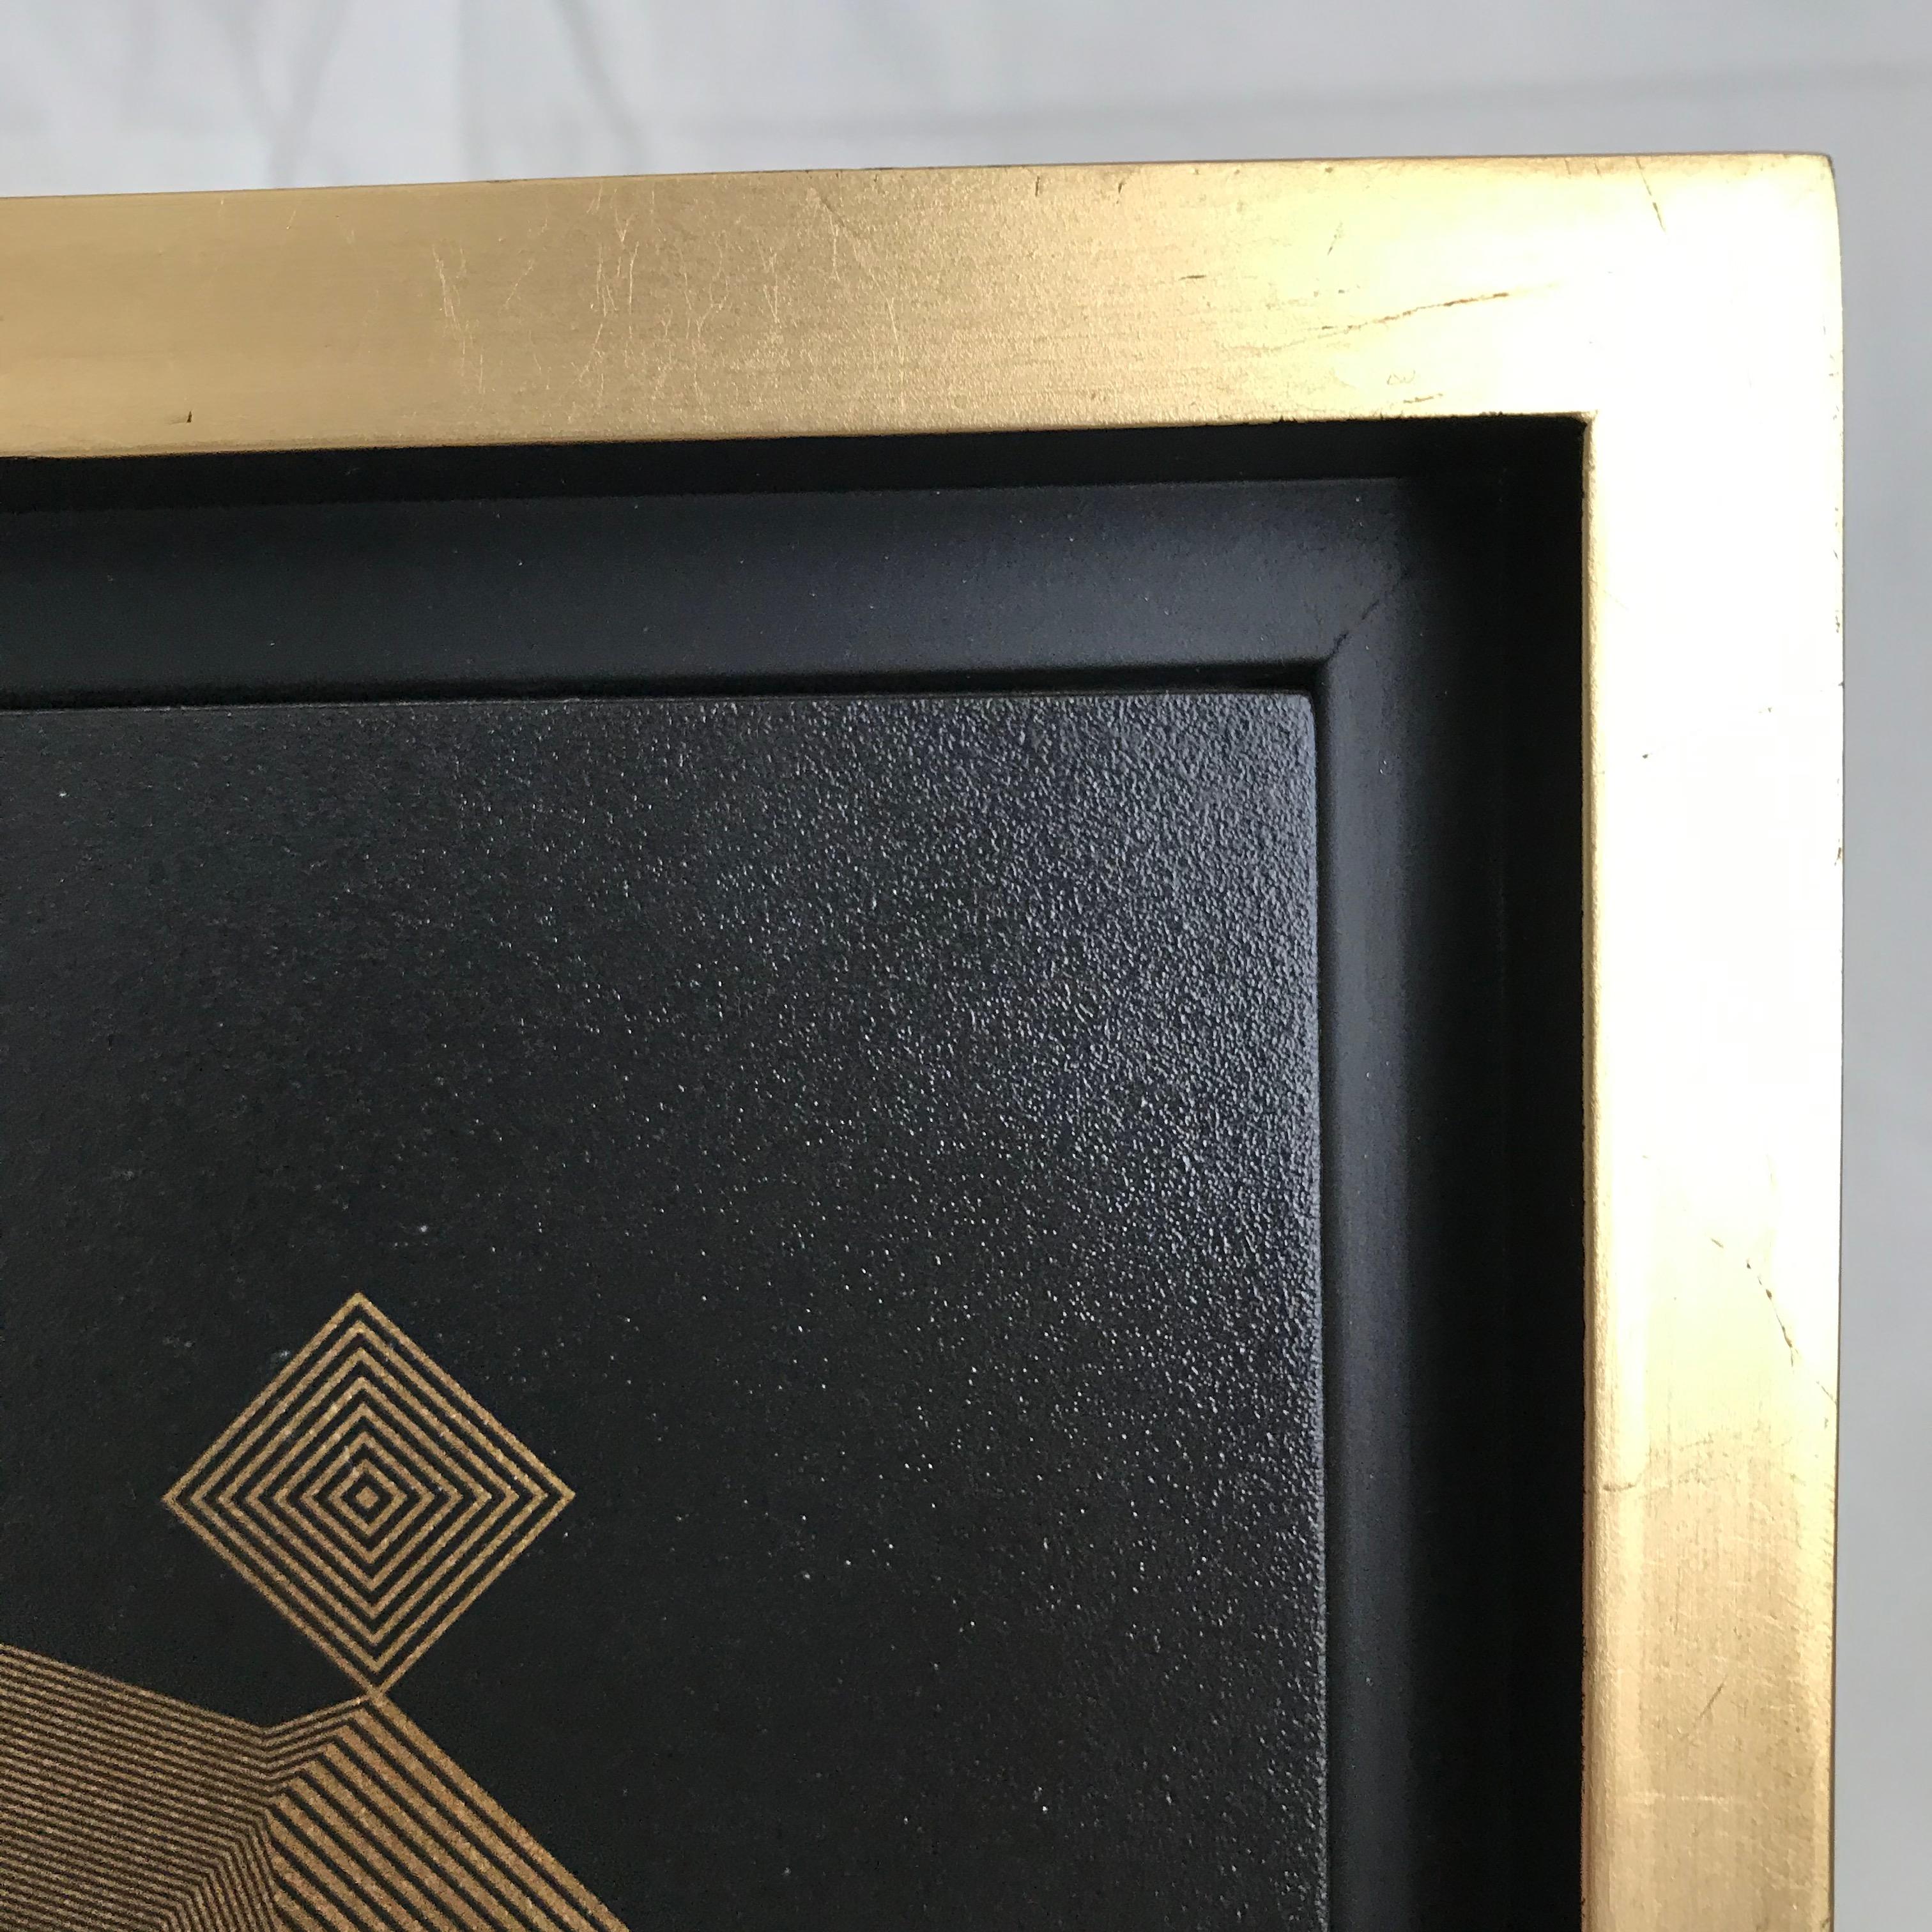 Sans titre 20, 2019 par Francisco Larios
Laque, acrylique, huile et feuille d'or sur MDF profond
Taille de l'image : 9.5 in. H x 9.5 in. W
Taille du cadre : 11.6 in. H x 11.6 in. La x 1.5 cm D
Unique en son genre

A partir de la  Série mexicaine